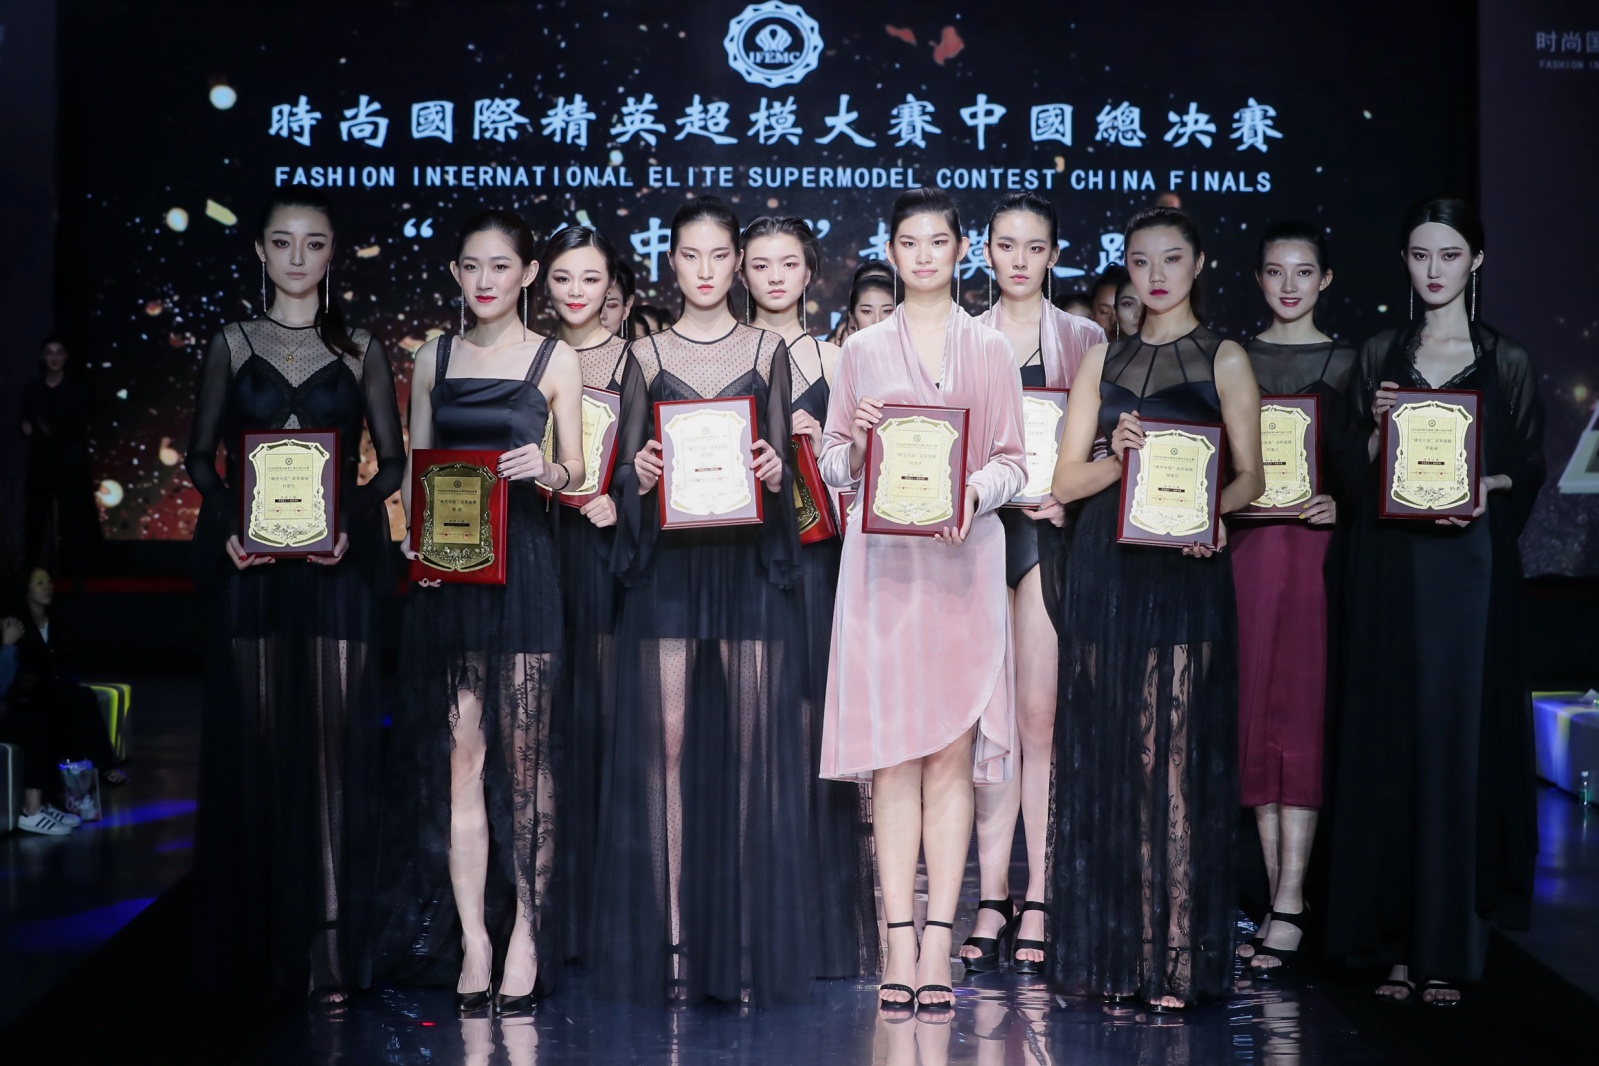 模范中国2018时尚国际精英超模大赛中国总决赛暨颁奖盛典